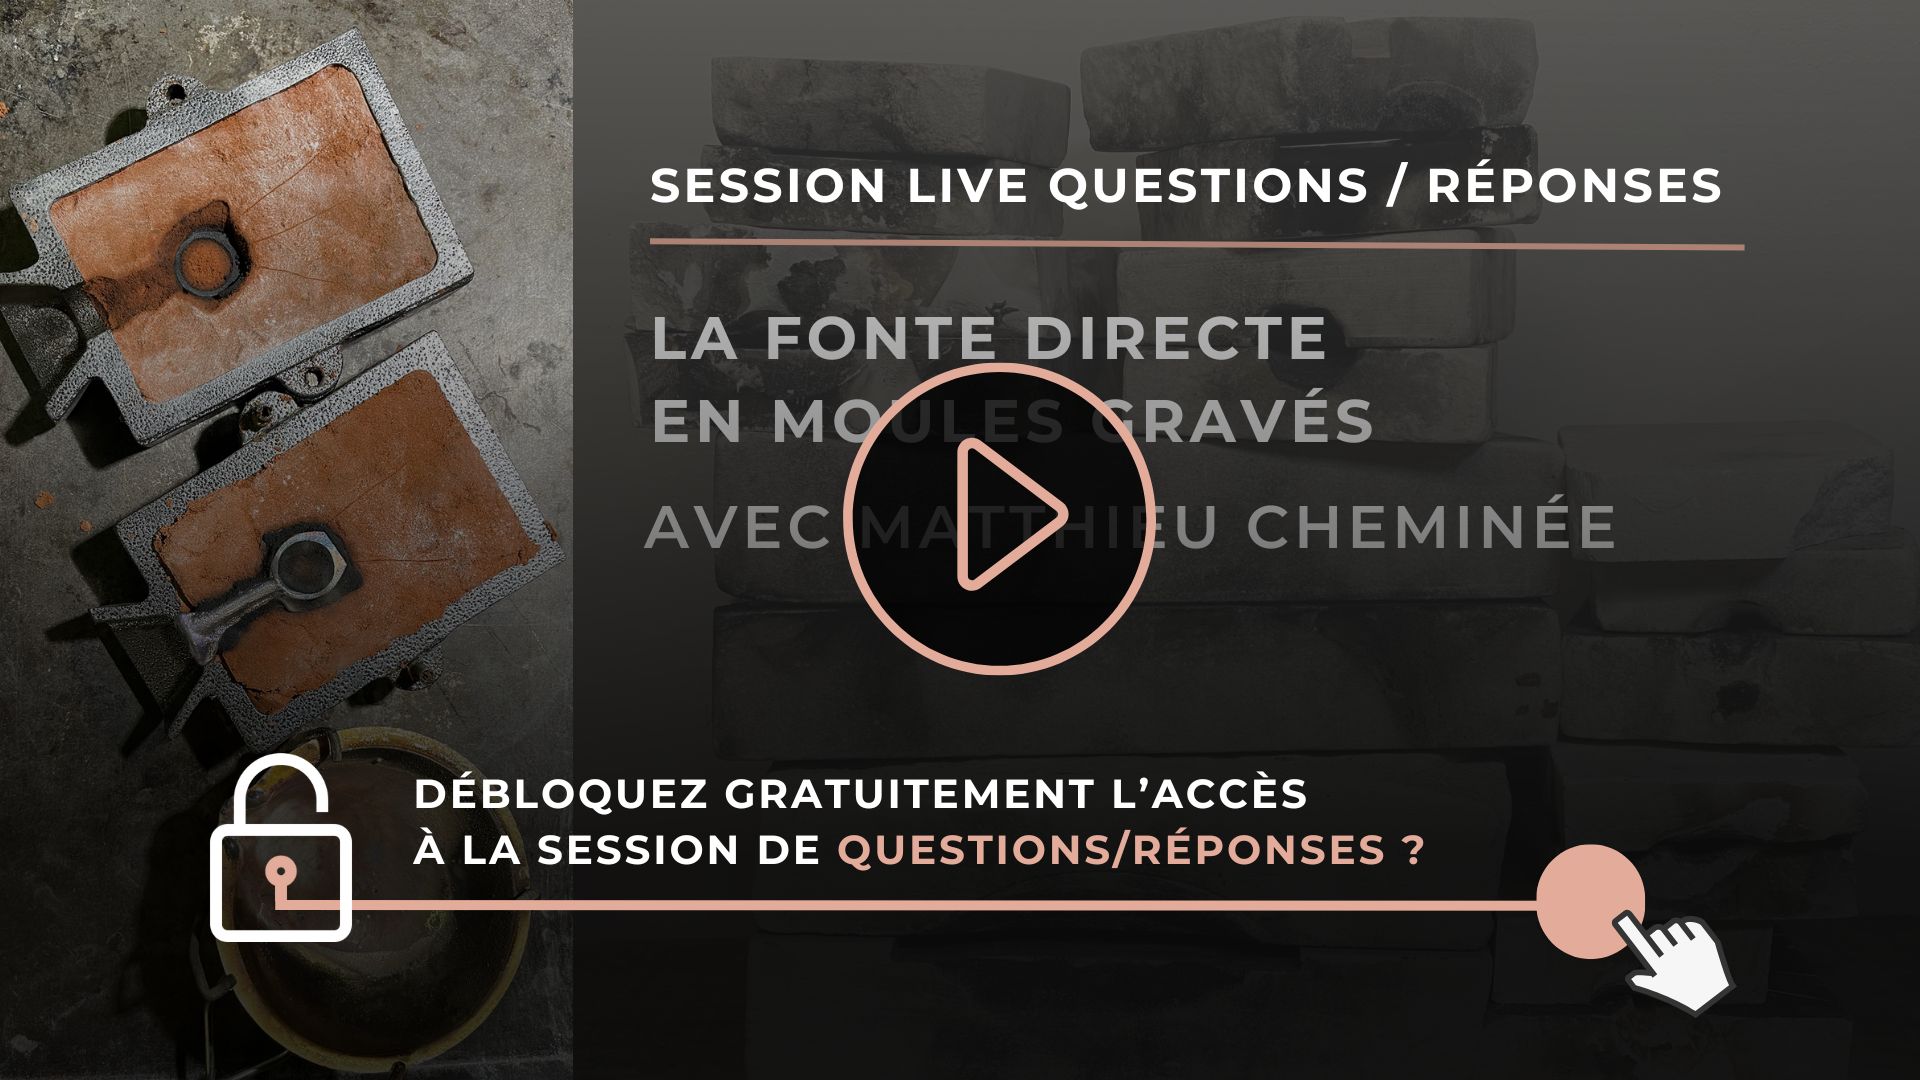 Vidéo session Live Questions Réponses - fonte directe en moules gravés- Matthieu Cheminée